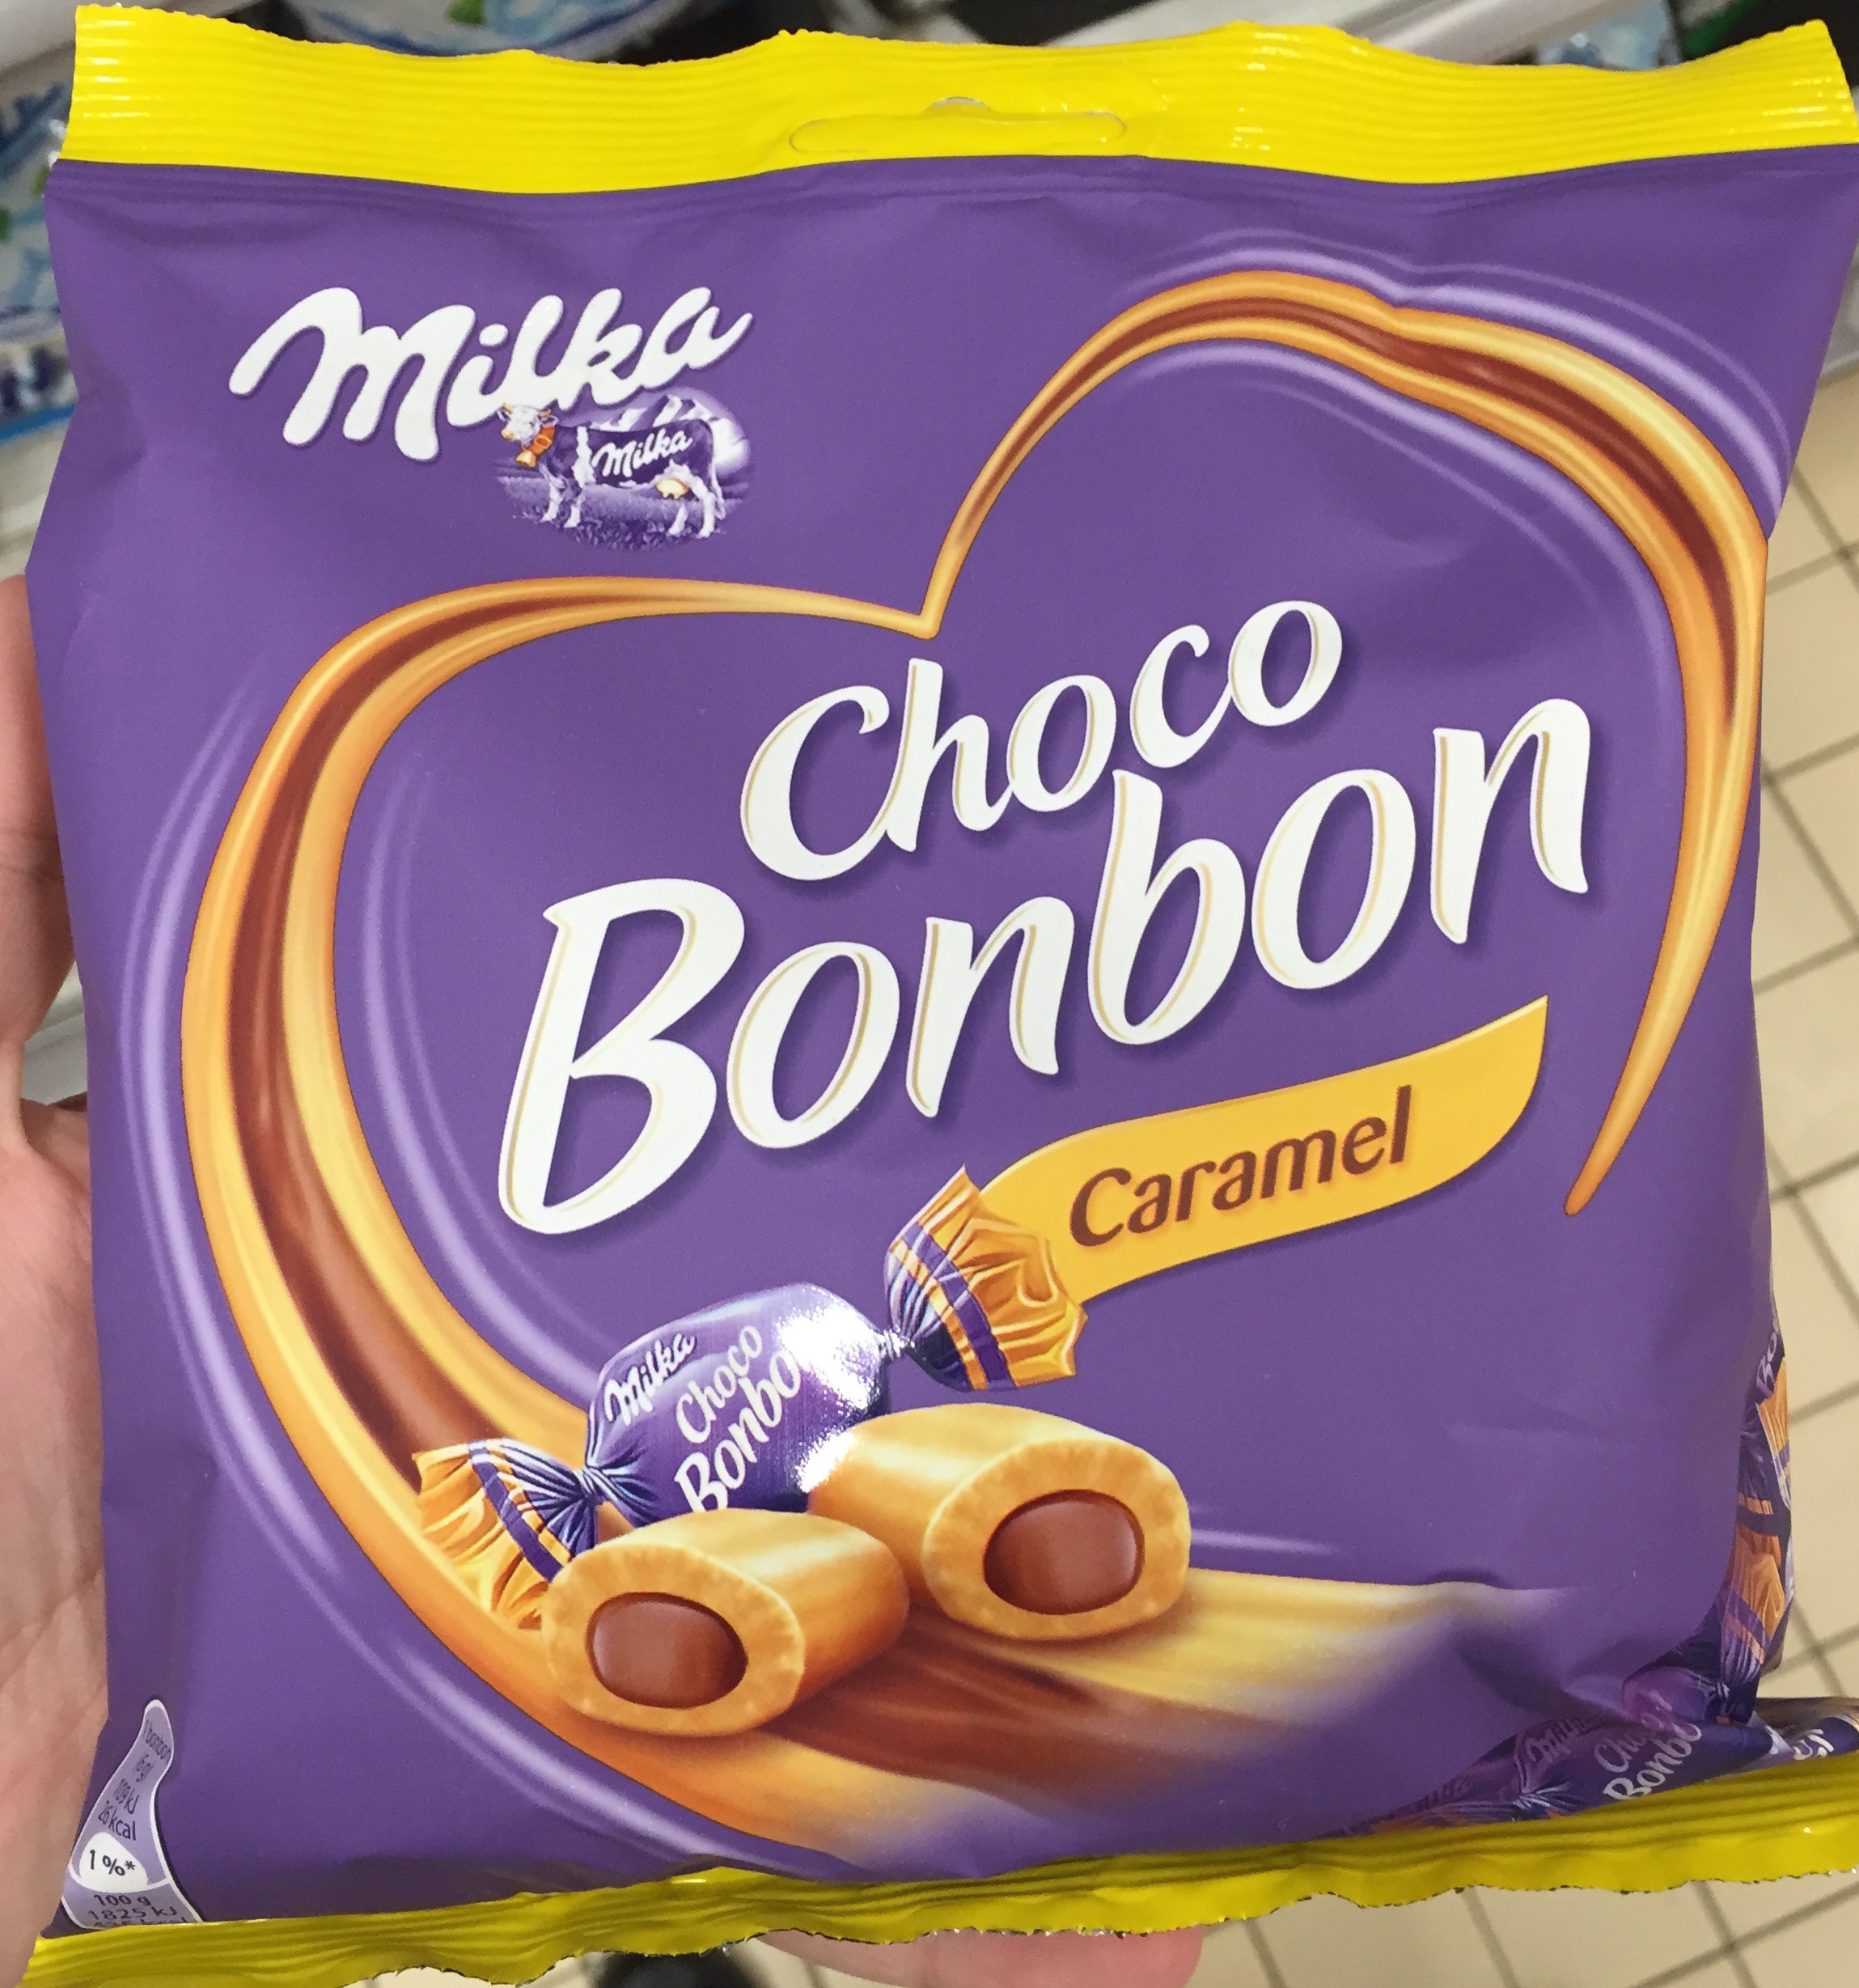 Choco Bonbon Caramel - Product - fr